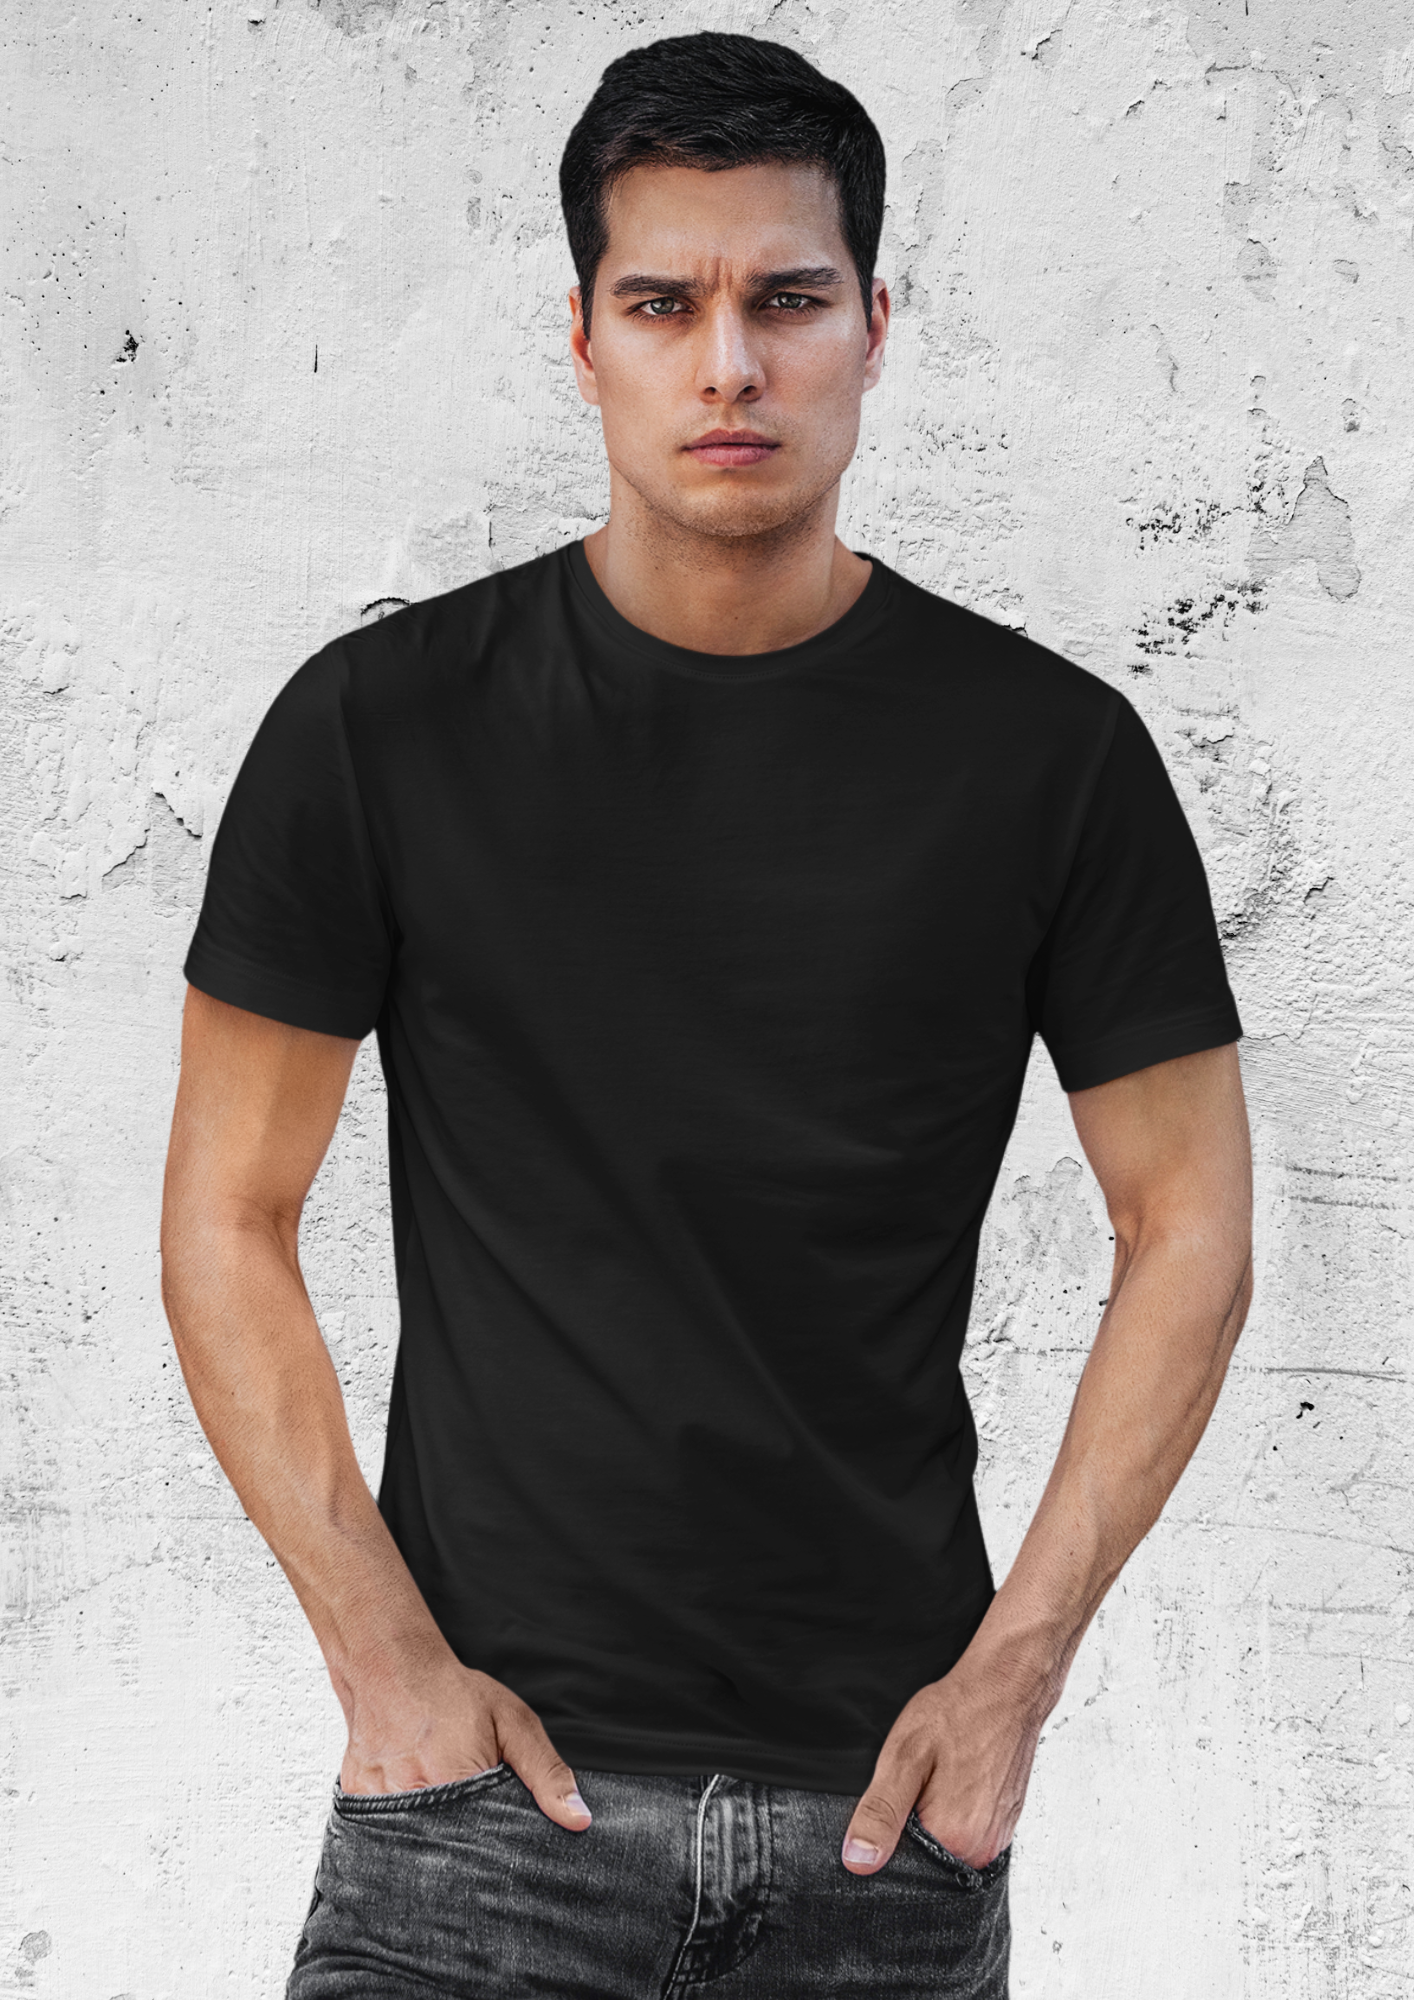 Men's 100% Cotton Premium Round Neck Tshirts - Black